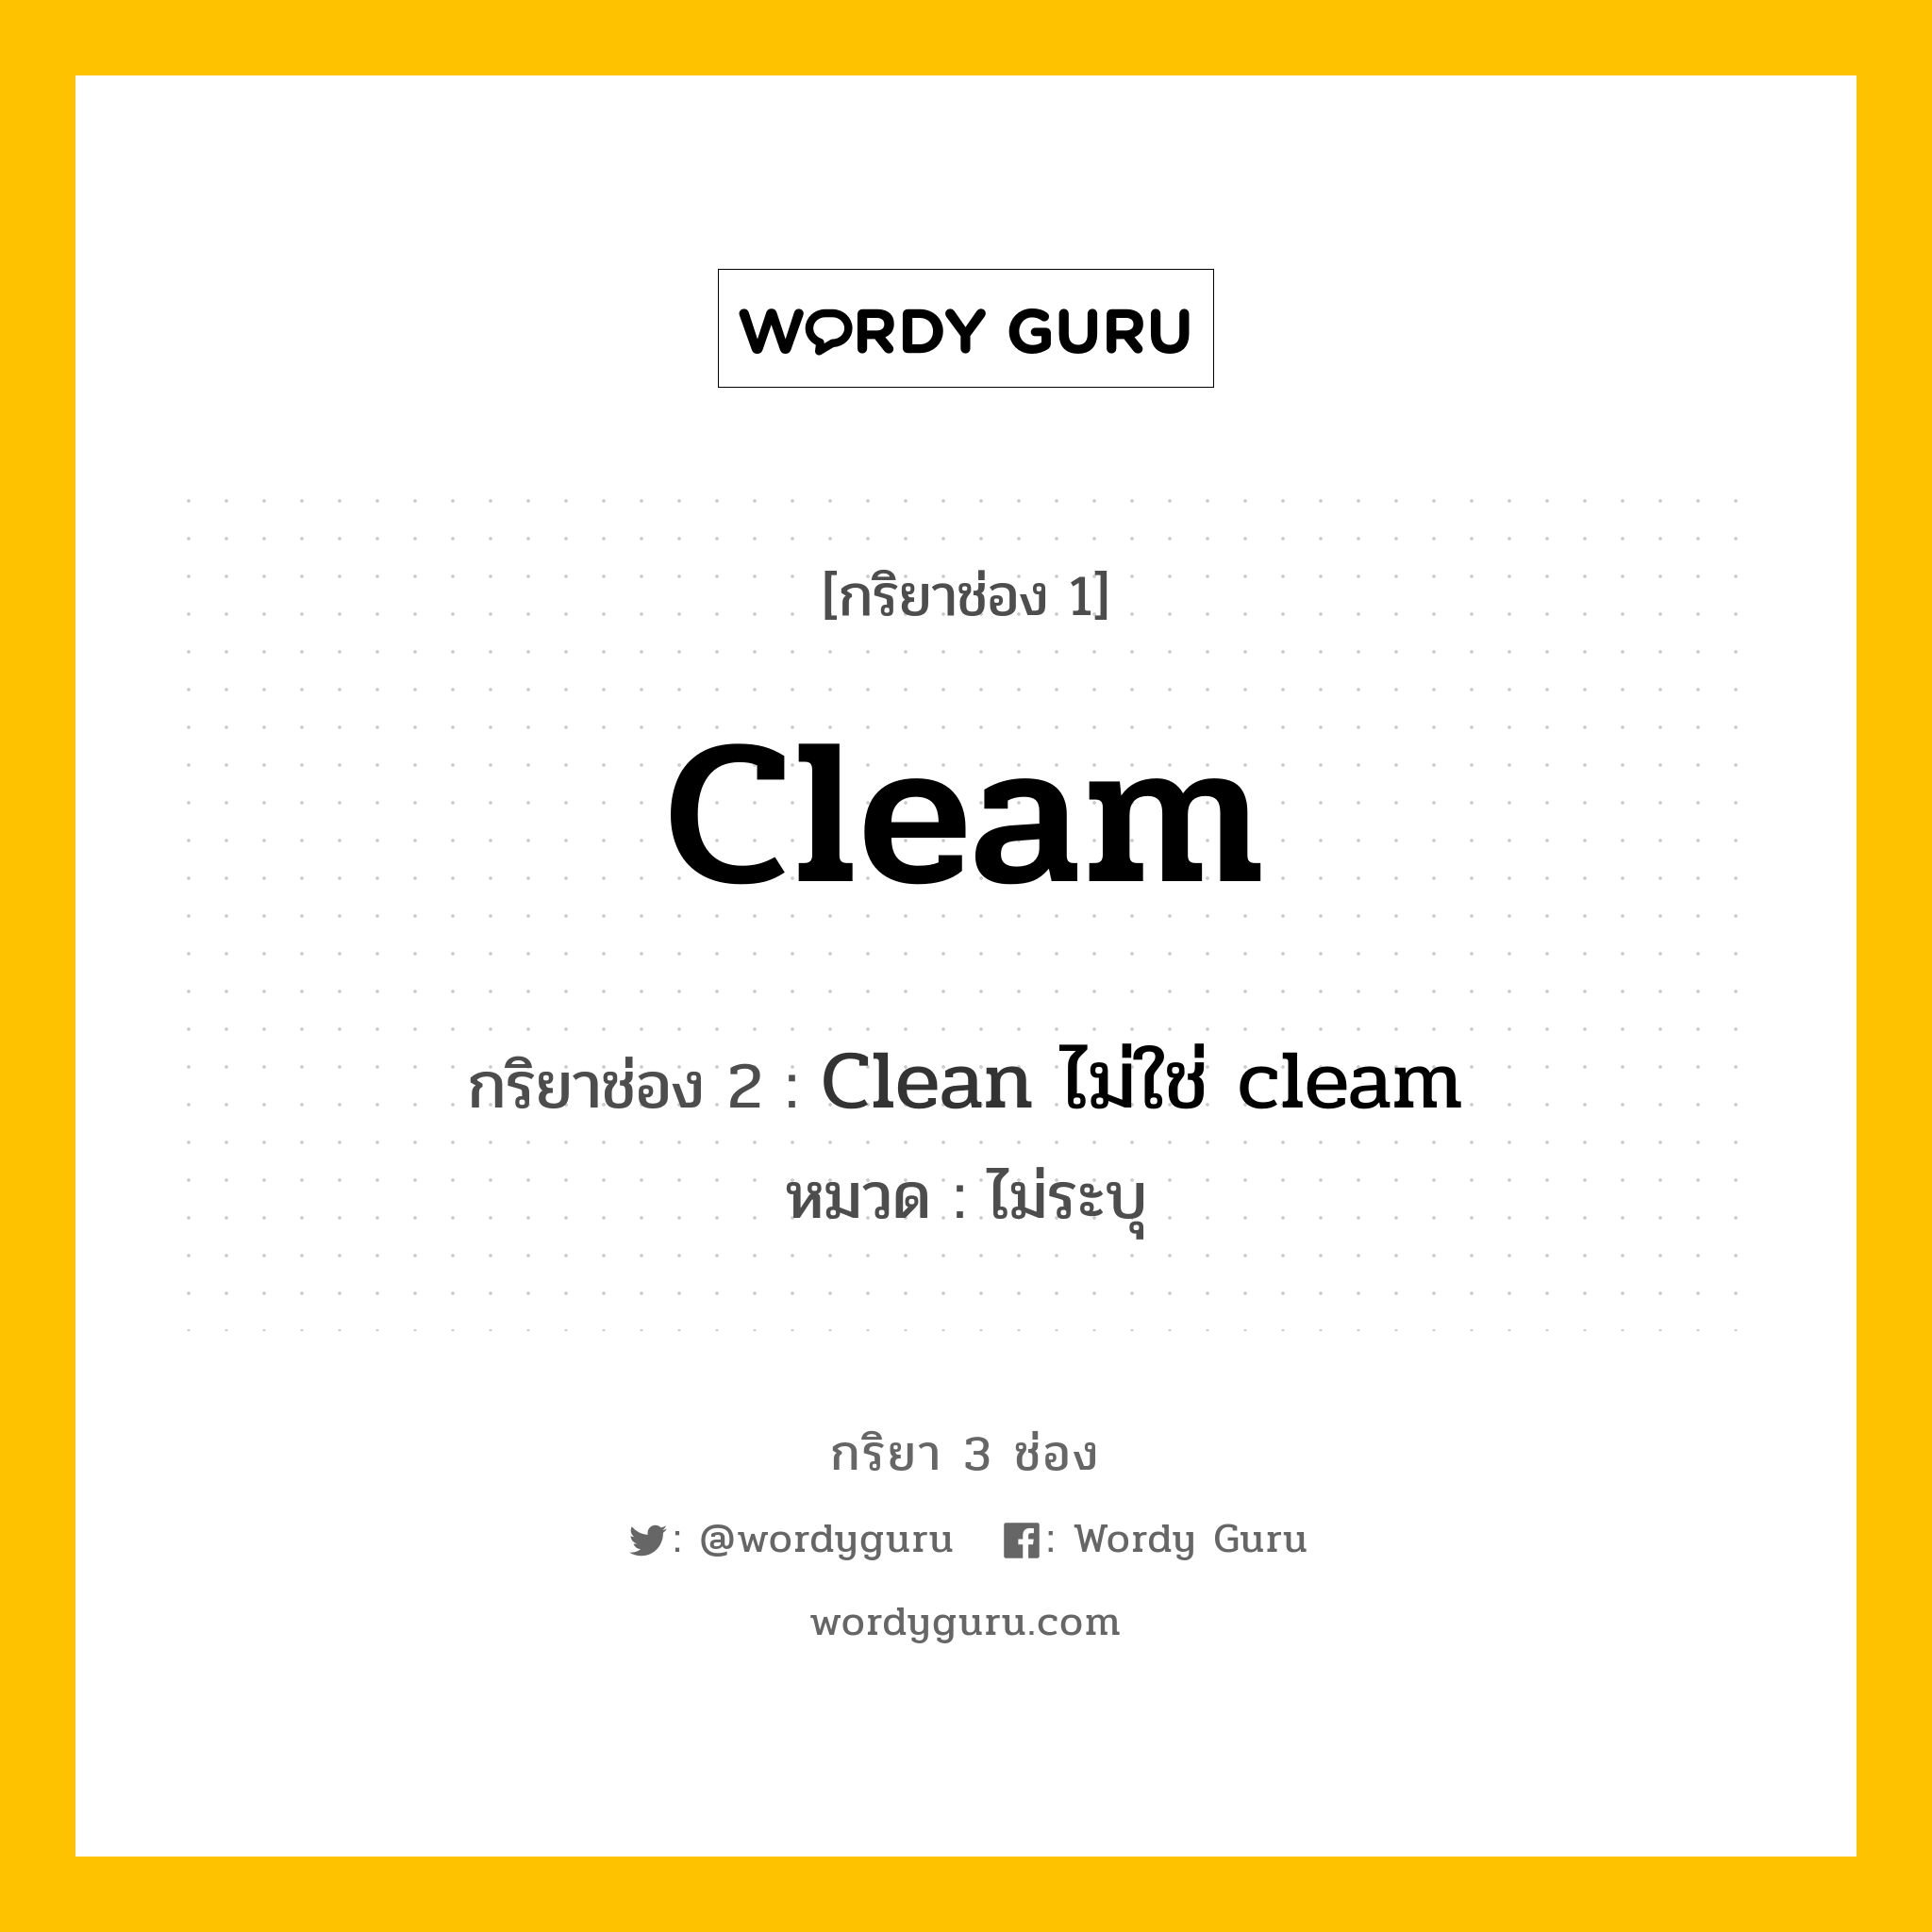 กริยา 3 ช่อง ของ Cleam คืออะไร? มาดูคำอ่าน คำแปลกันเลย, กริยาช่อง 1 Cleam กริยาช่อง 2 Clean ไม่ใช่ cleam หมวด ไม่ระบุ หมวด ไม่ระบุ